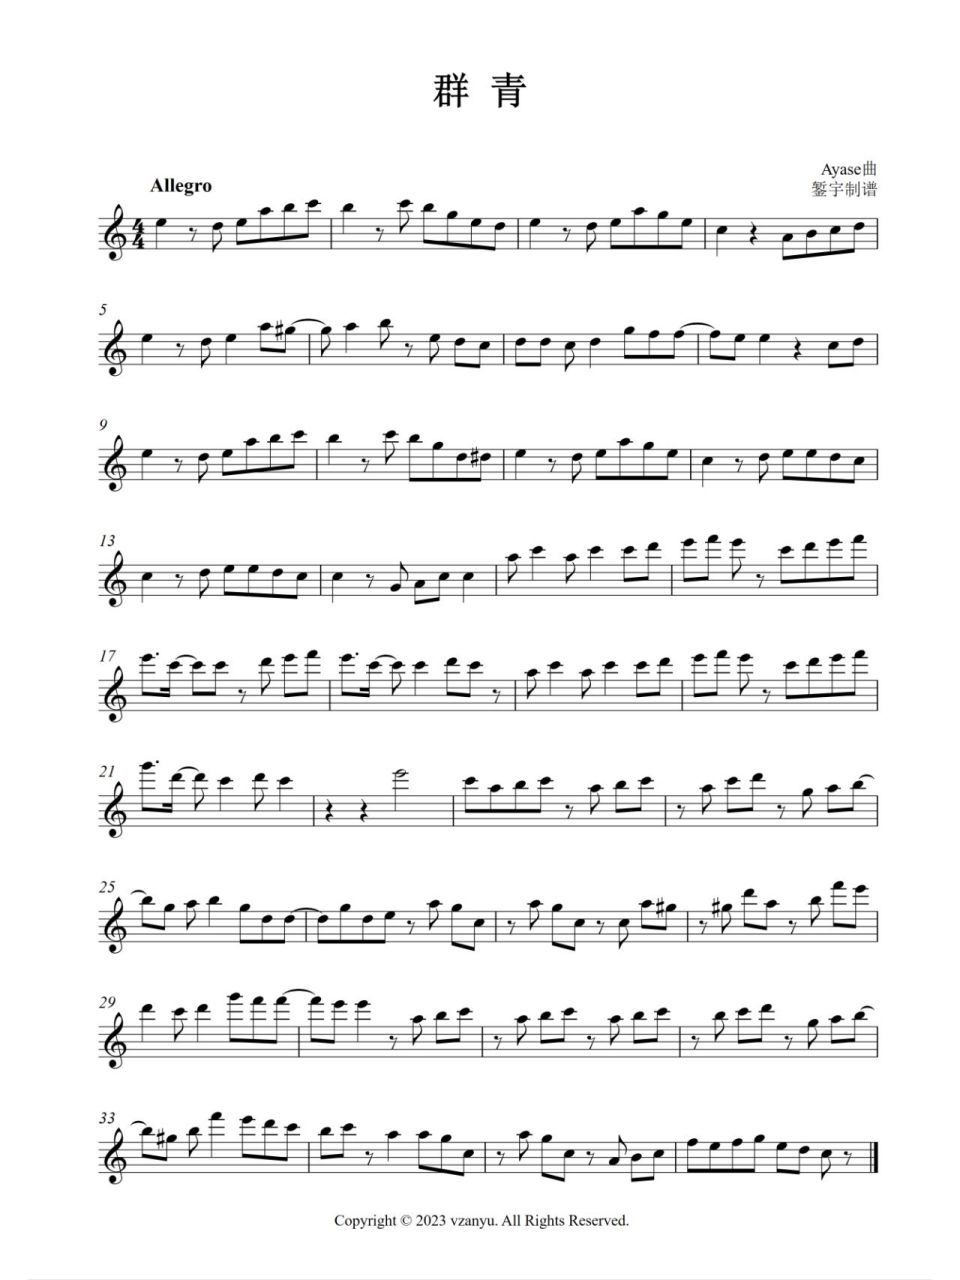 《群青》节选长笛,单簧管等乐器五线谱曲谱 图1:c调 图2:降b调 其他调